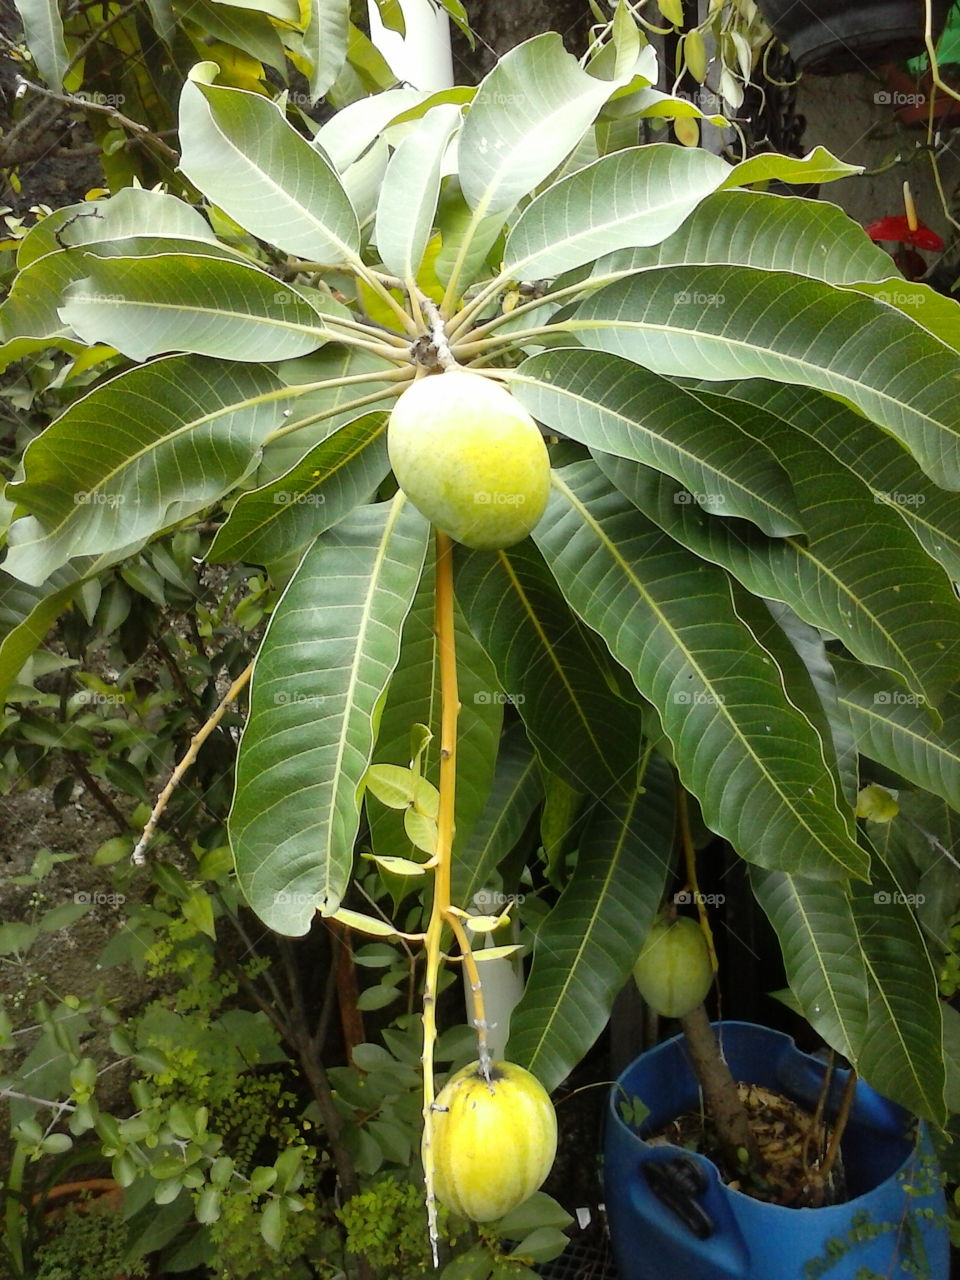 Fruta manga predominante na america do sul pricinpalmente no brasil aonde conhecido como pe de manga aonde e bastante consumida como refresco.